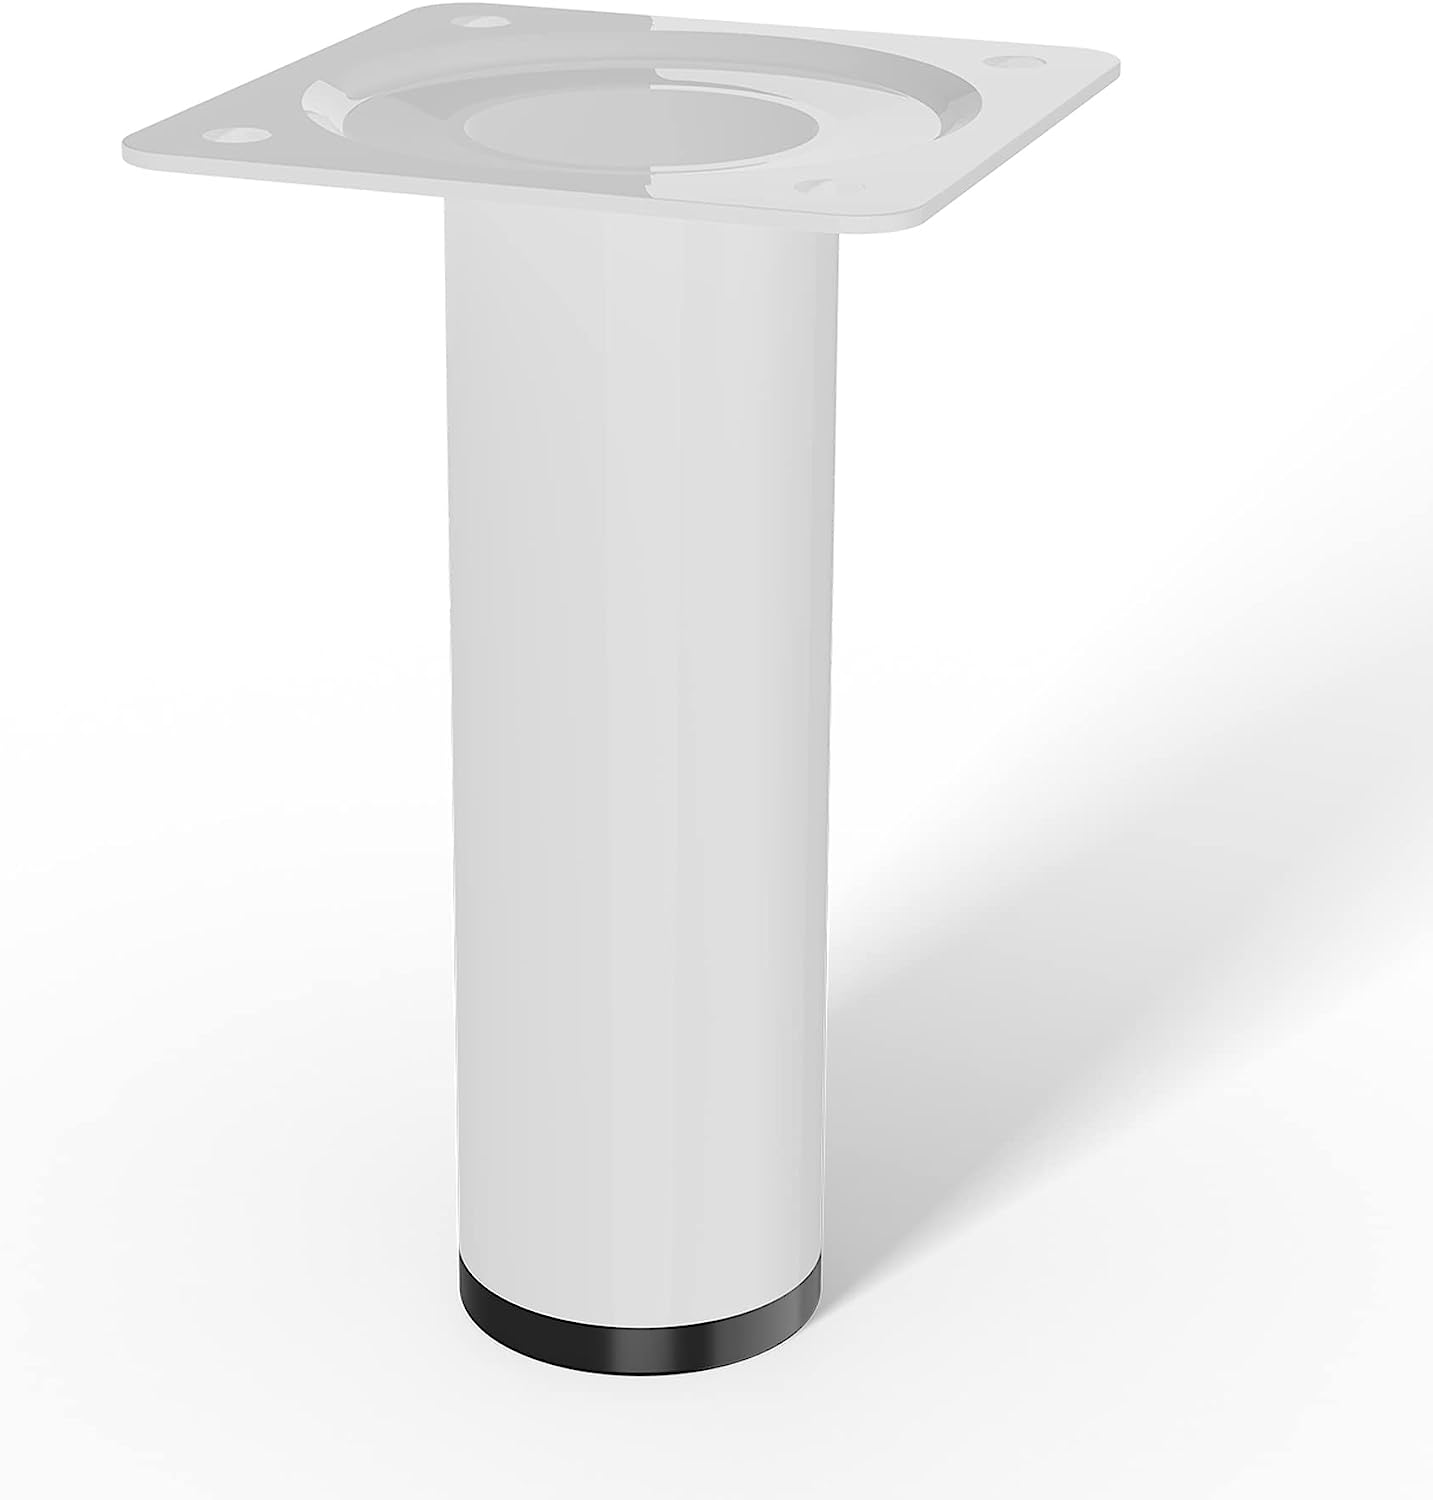 LouMaxx Tischbeine Metall rund – Stahlrohrfüße Ø 30 mm x 100mm inkl. Schrauben – Tischbeine weiß mit Anschraubplatte – Hochwertige Tischfüße für individuelle DIY-Möbel – 4er Set in Weiß